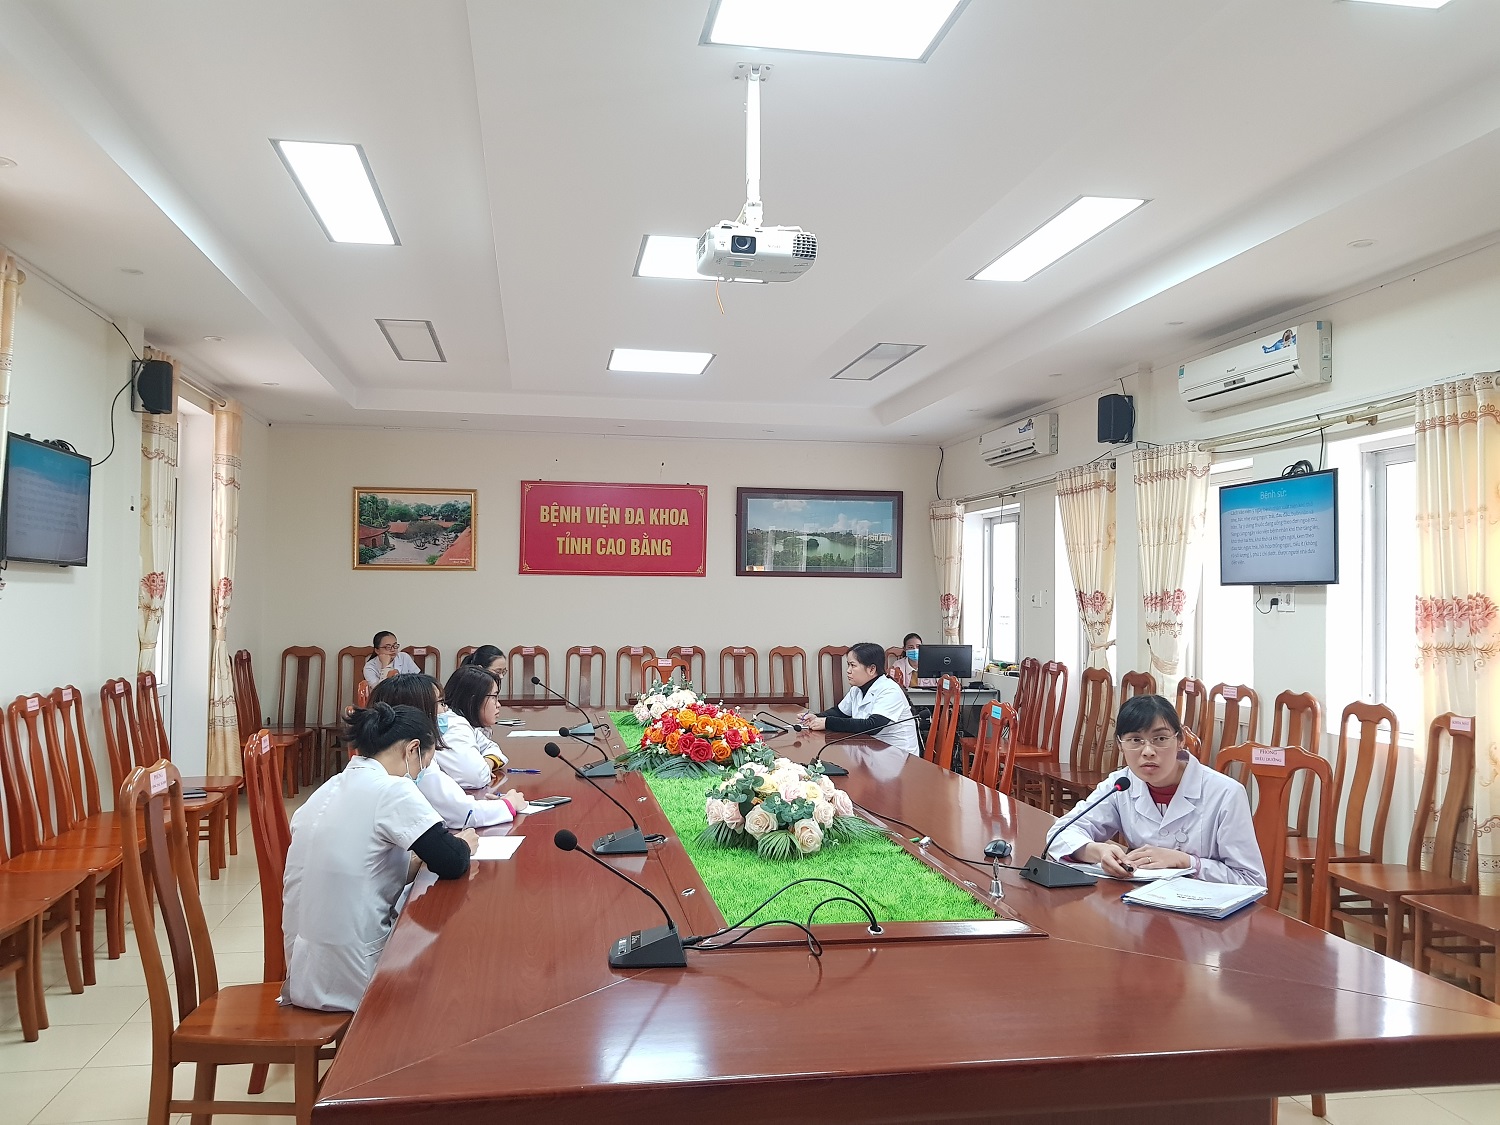 BVĐK tỉnh Cao Bằng tham gia hội chẩn trực tuyến của Bệnh viện Tim Hà Nội